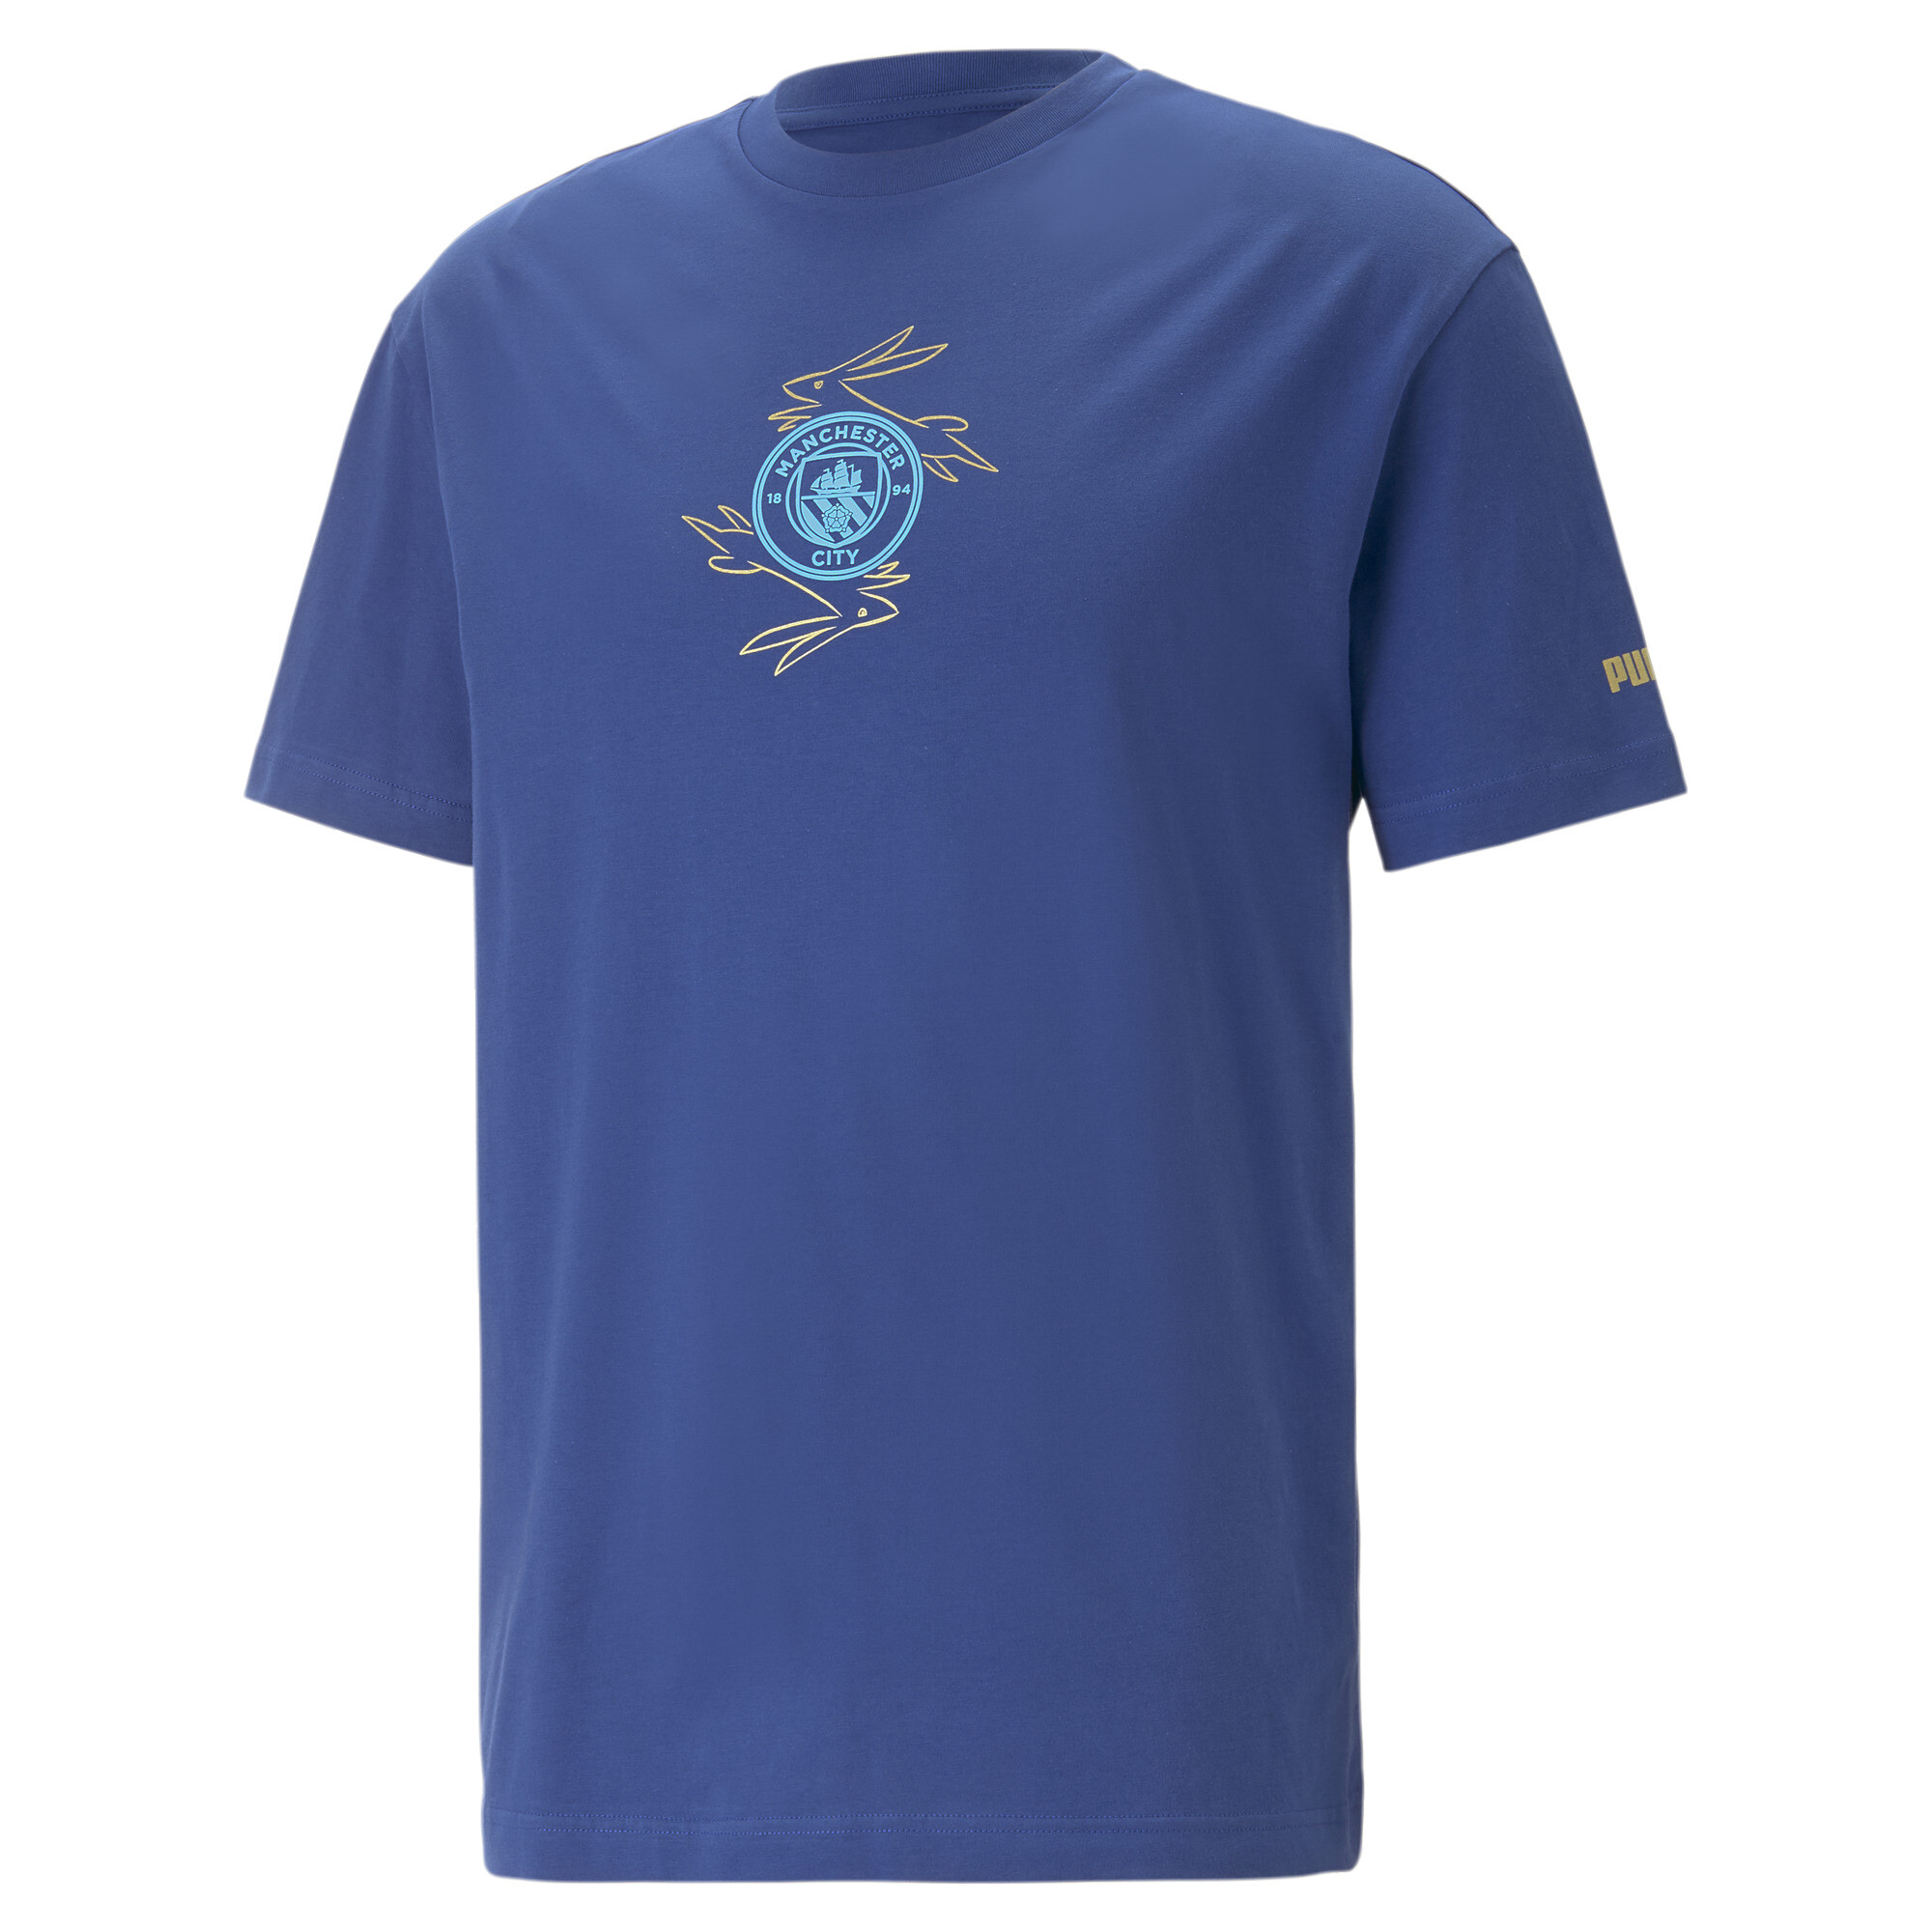 プーマ メンズ マンチェスター シティー MCFC チャイニーズ ニューイヤー 半袖 Tシャツ メンズ Blazing Blue-Puma Team Gold ｜PUMA.comの画像